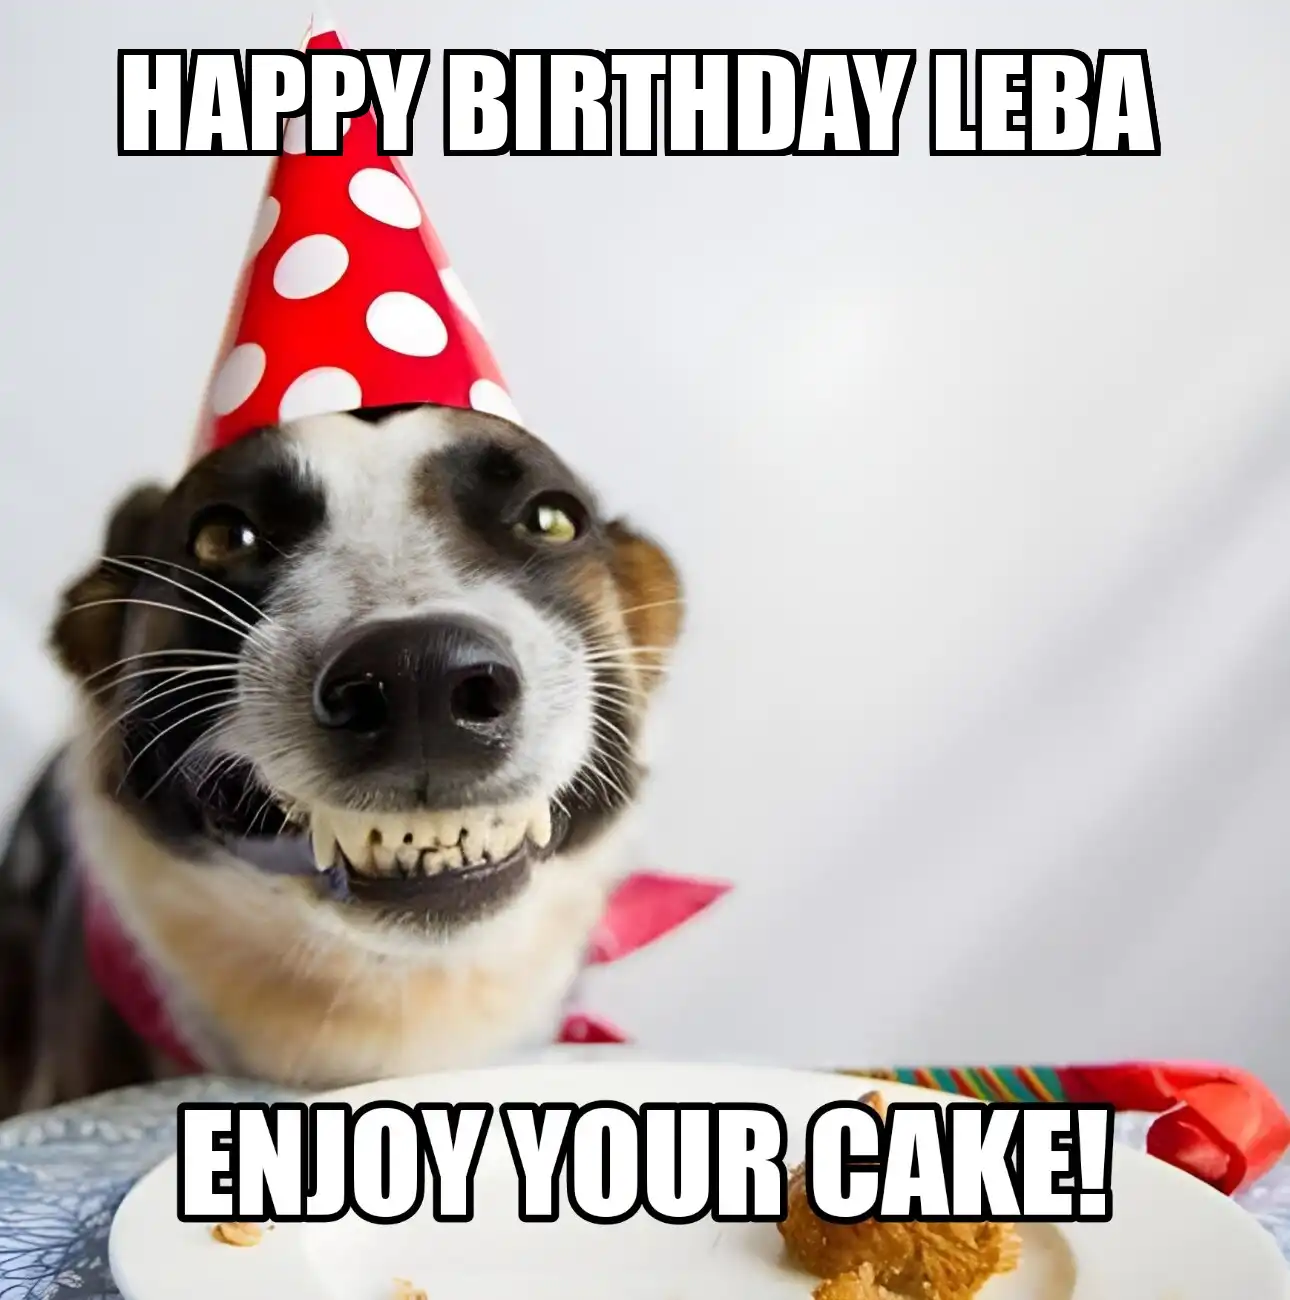 Happy Birthday Leba Enjoy Your Cake Dog Meme